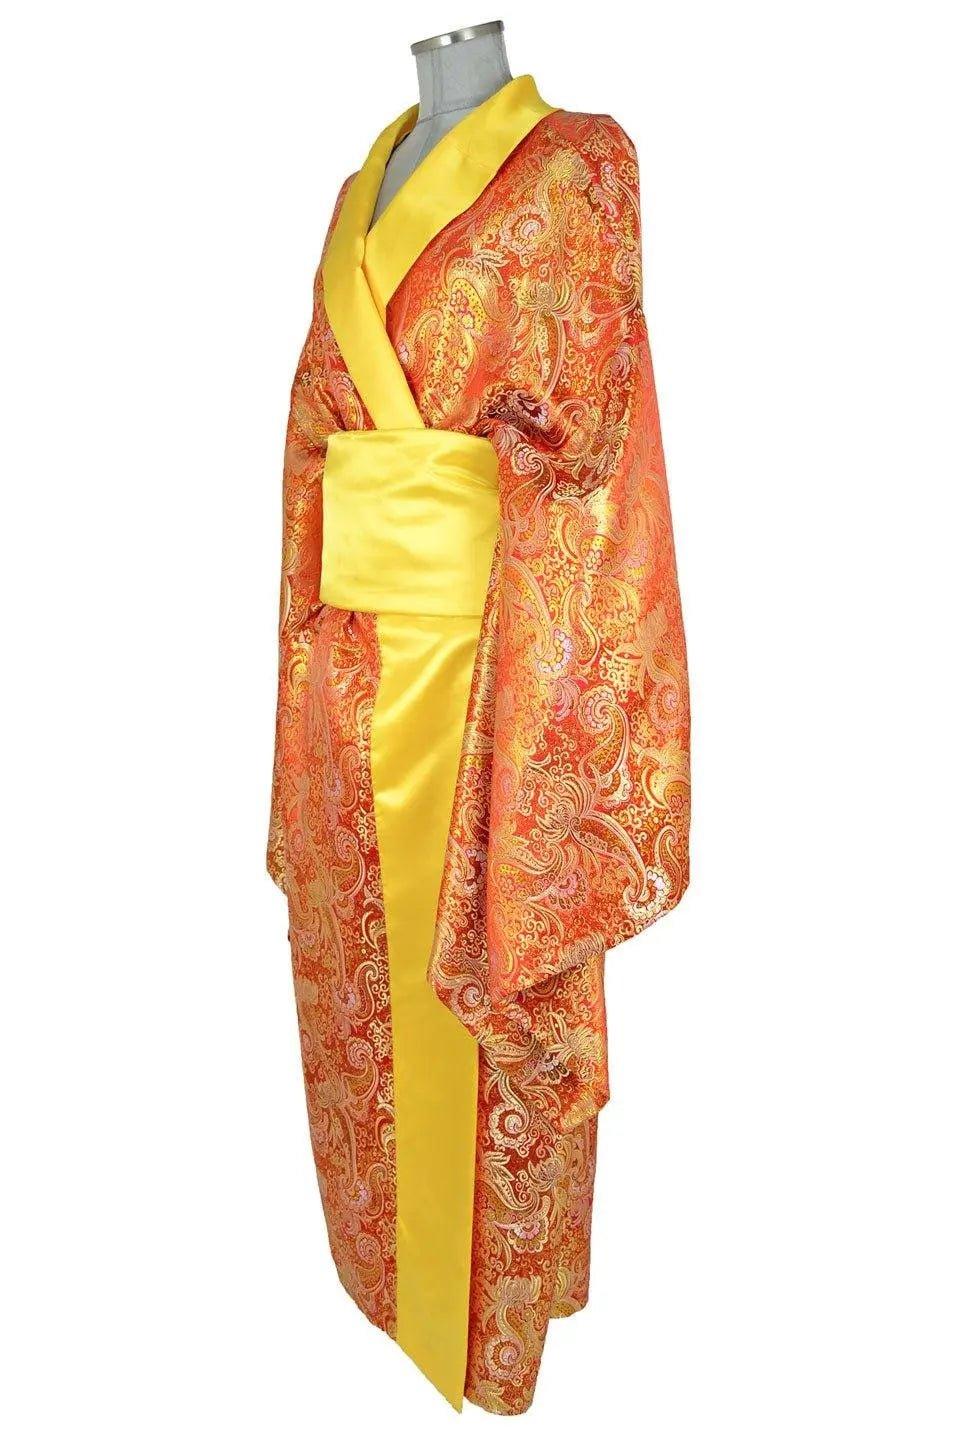 Abito kimono donna per rappresentazioni teatrali di Madama Butterfly o